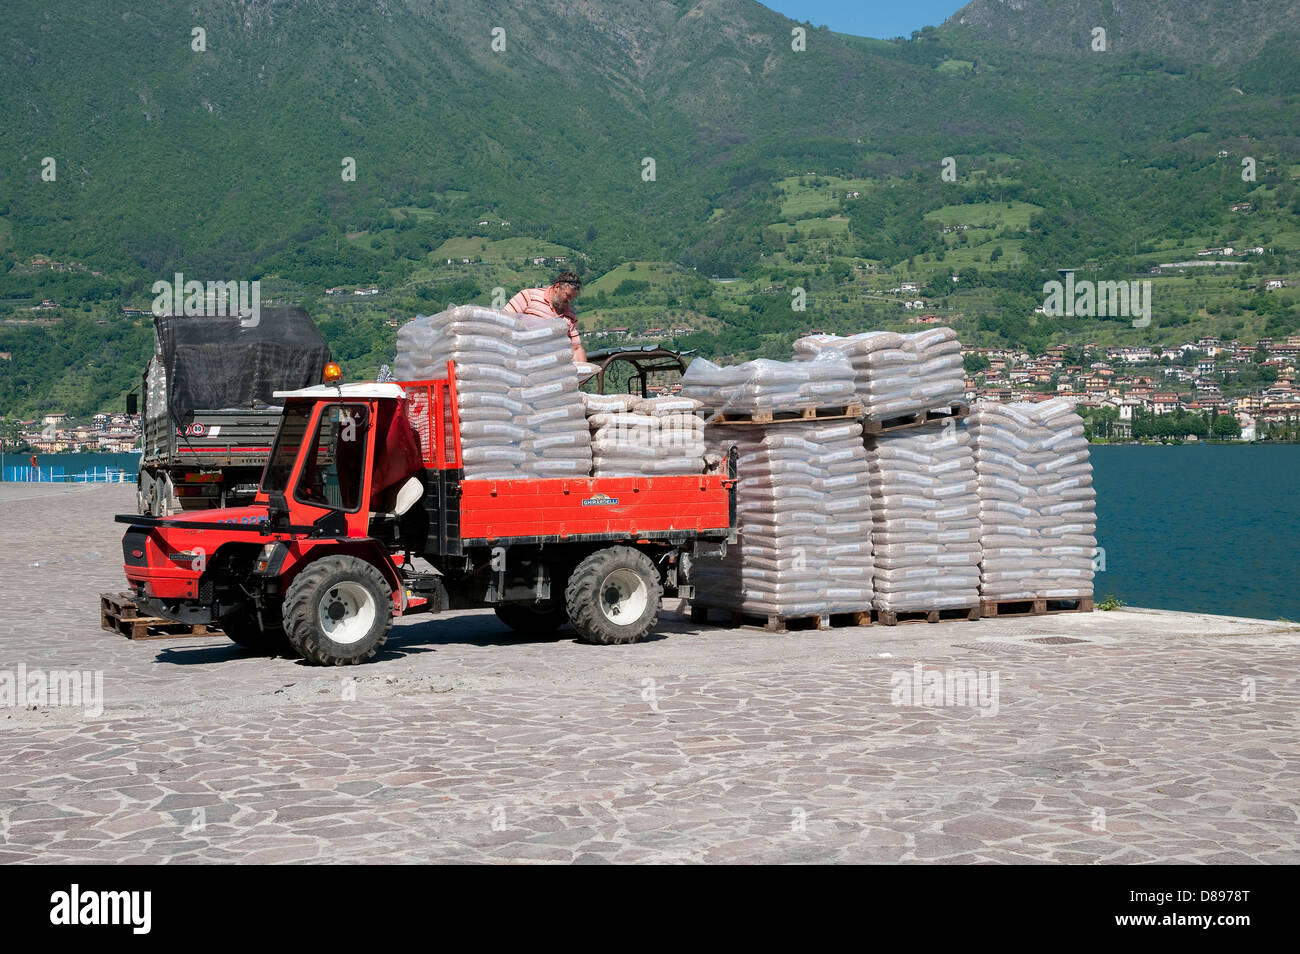 Caricamento di piccolo camion con i sacchi, Monte Isola, lago d'Iseo, lombardia, italia Foto Stock